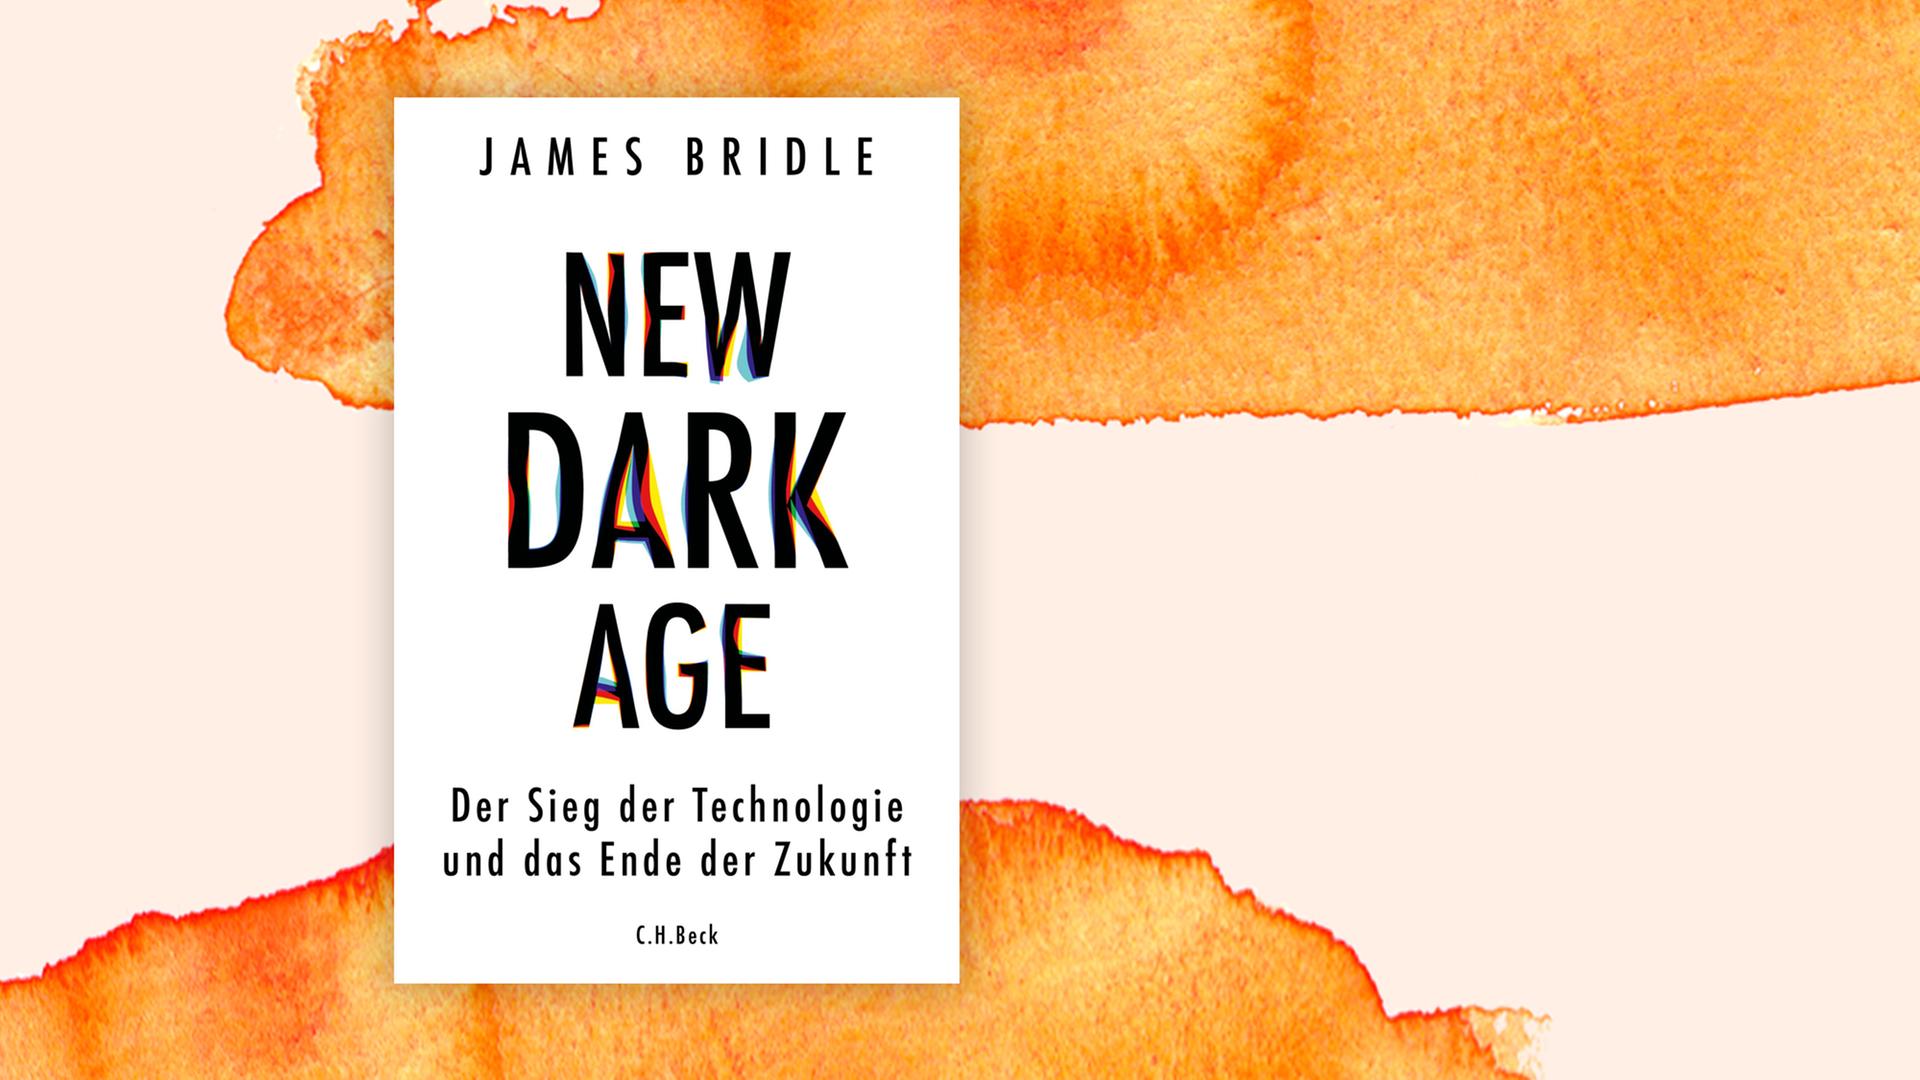 Buchcover zu "New Dark Age" von James Bridle